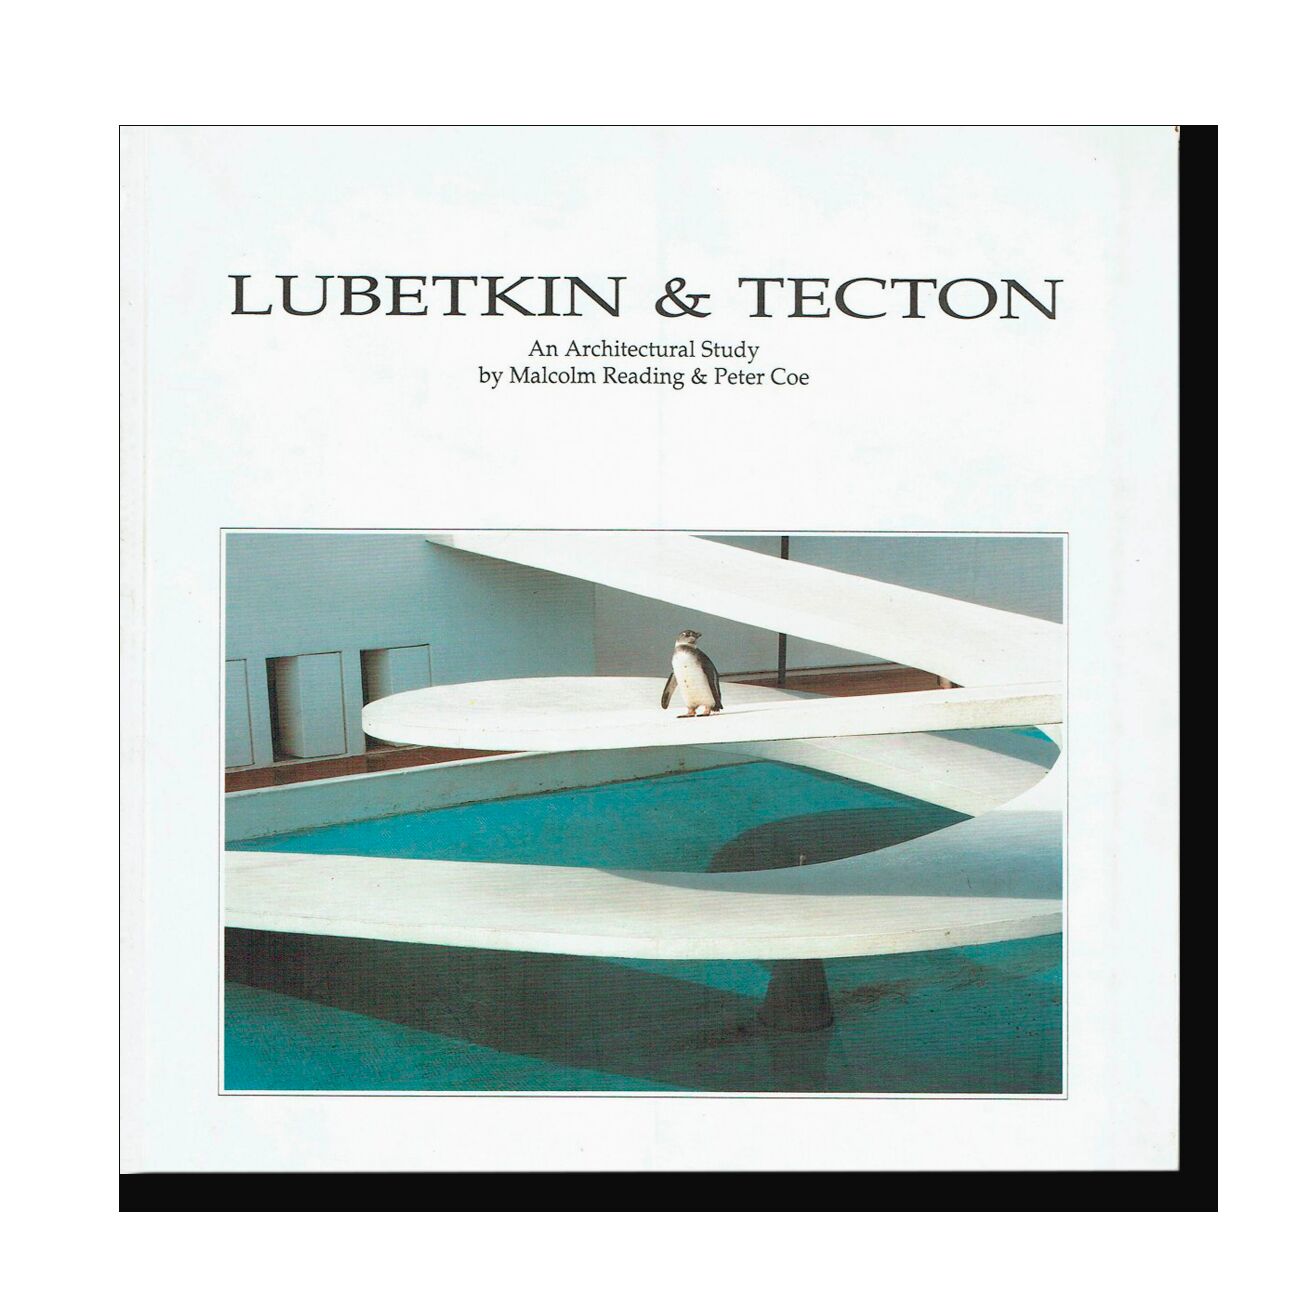 Lubetkin & Tecton